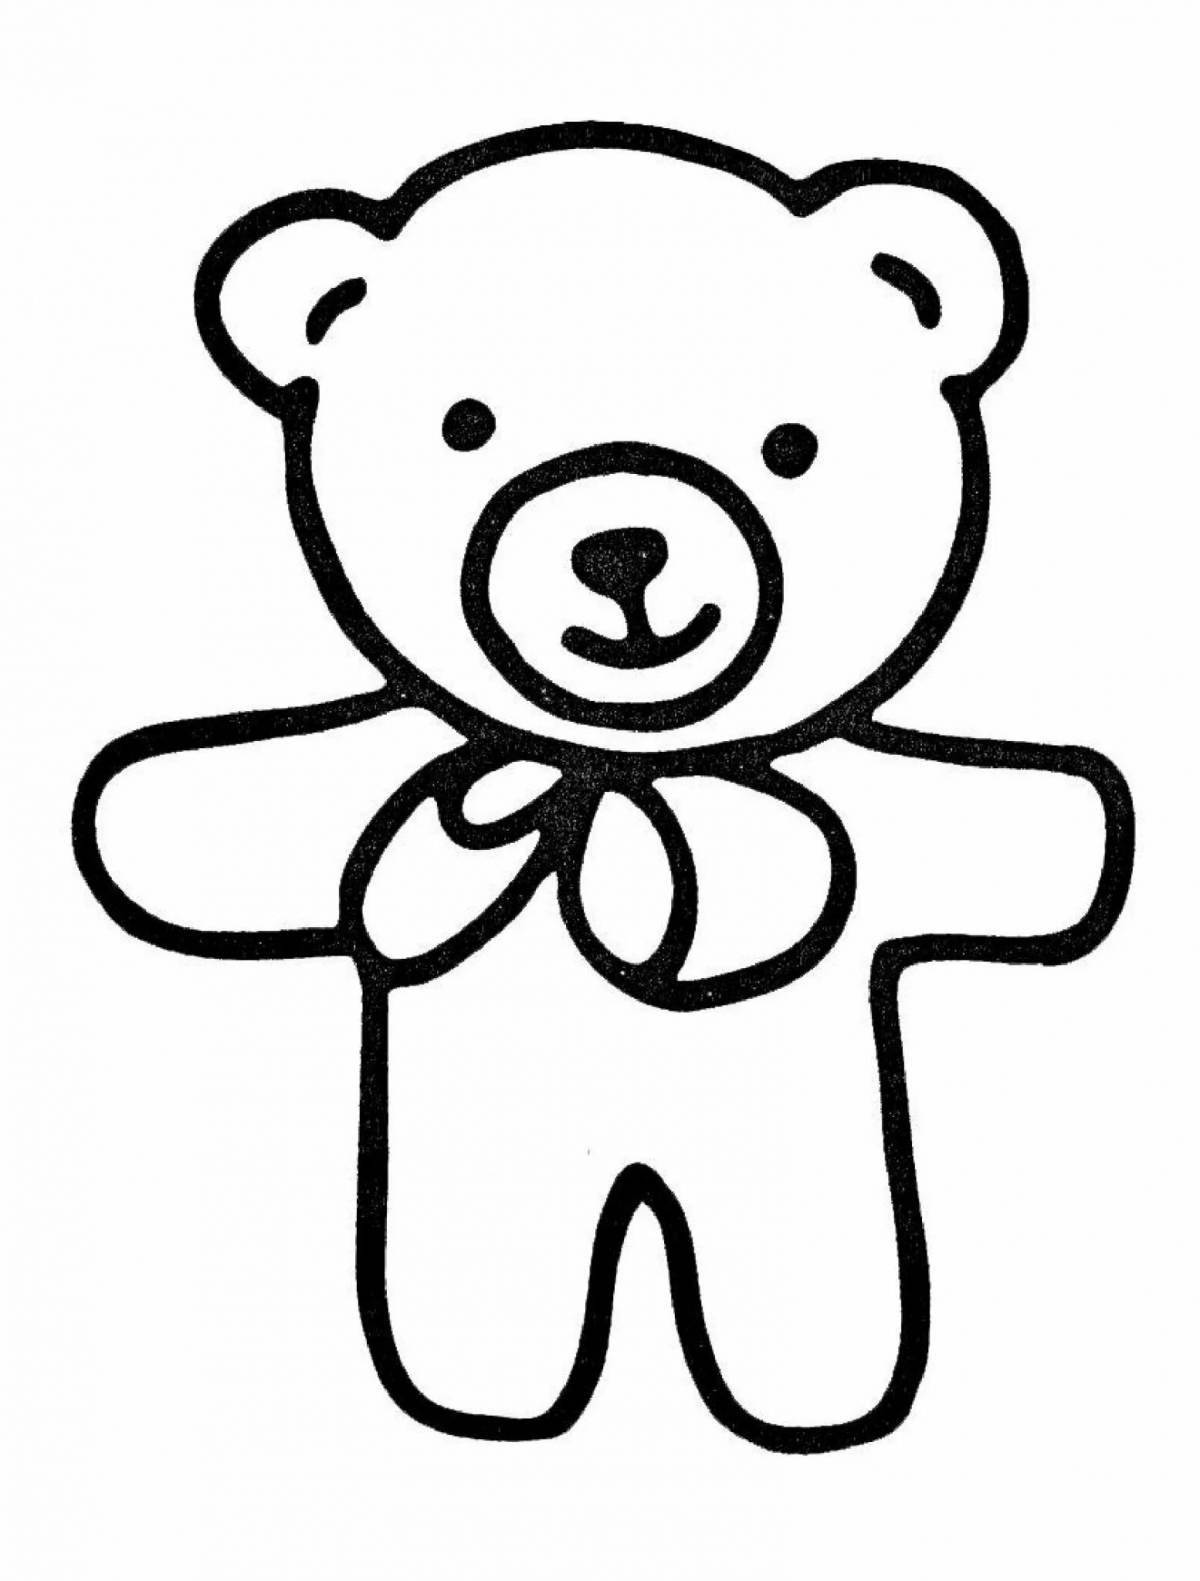 Adorable teddy bear coloring book